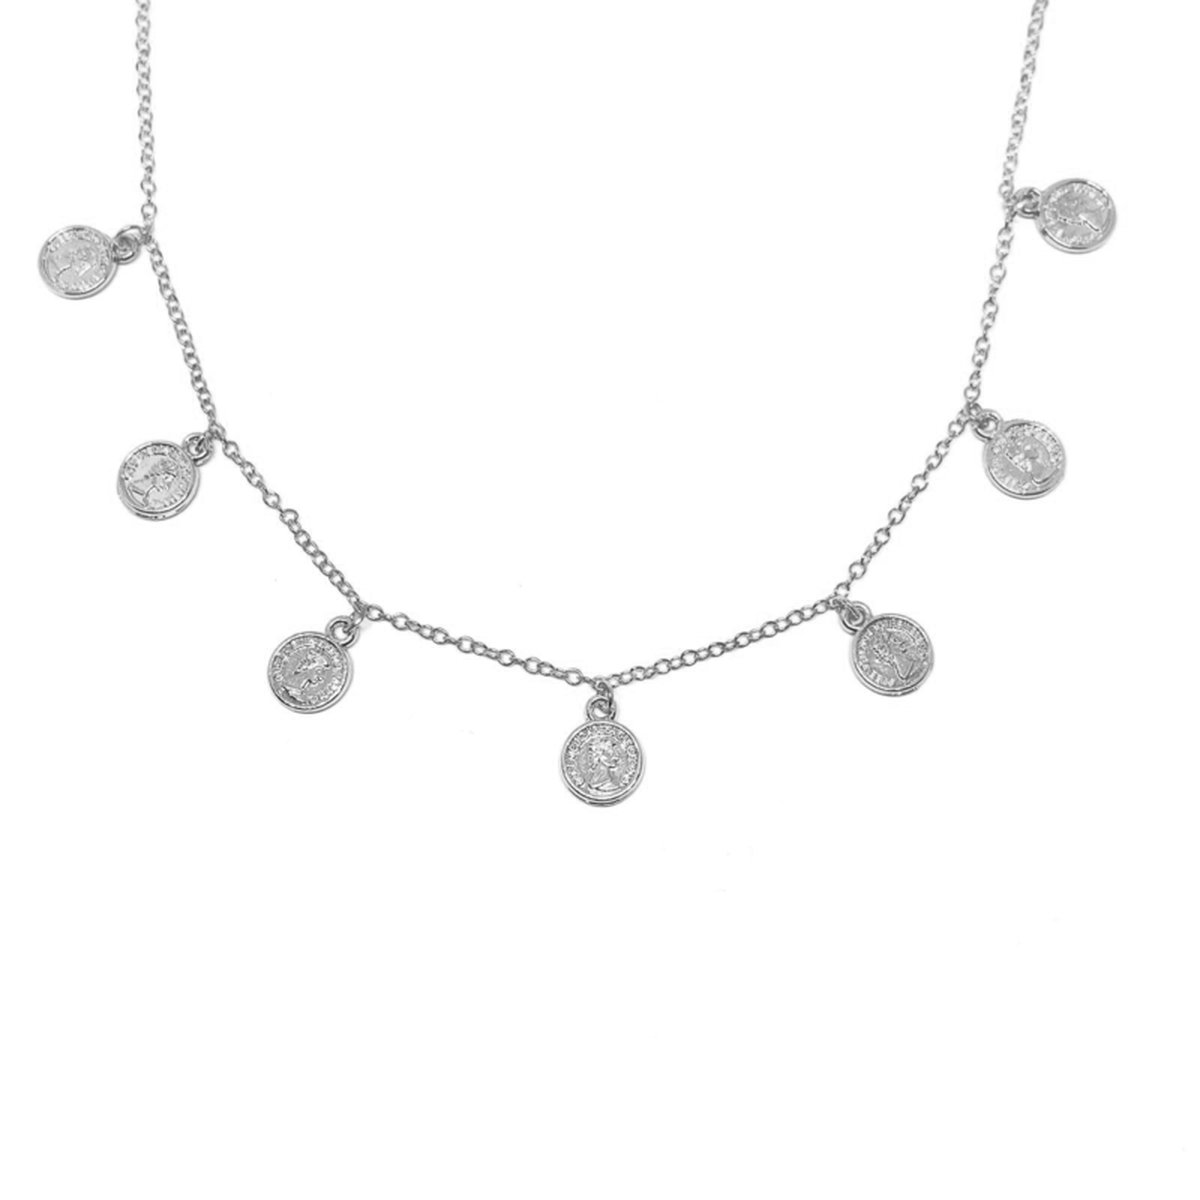 7 Elizabeth coins necklace - silver